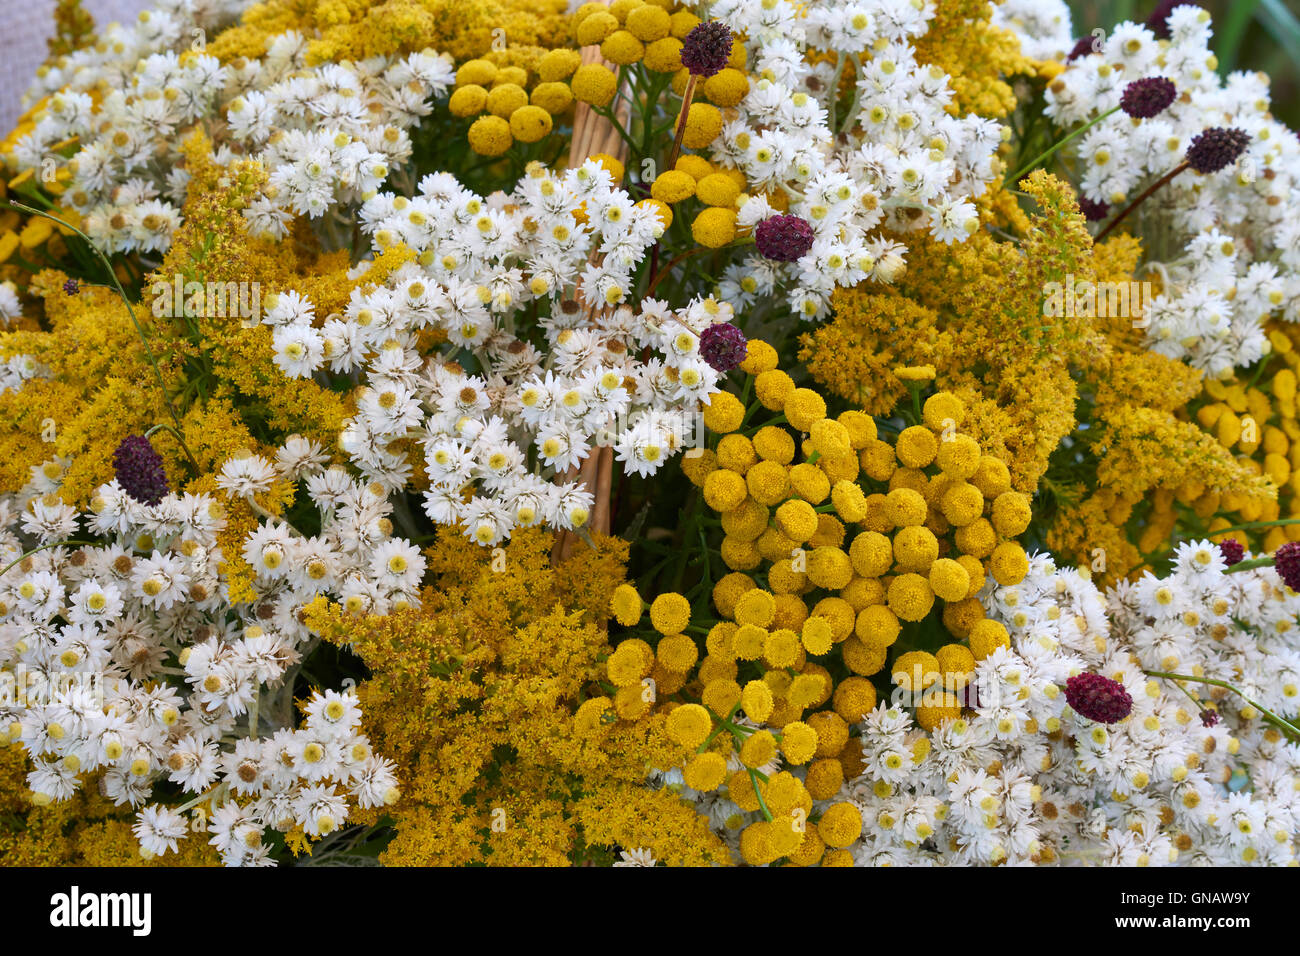 Arrangement de fleurs magnifiques avec de petites fleurs jaunes et blanches Banque D'Images